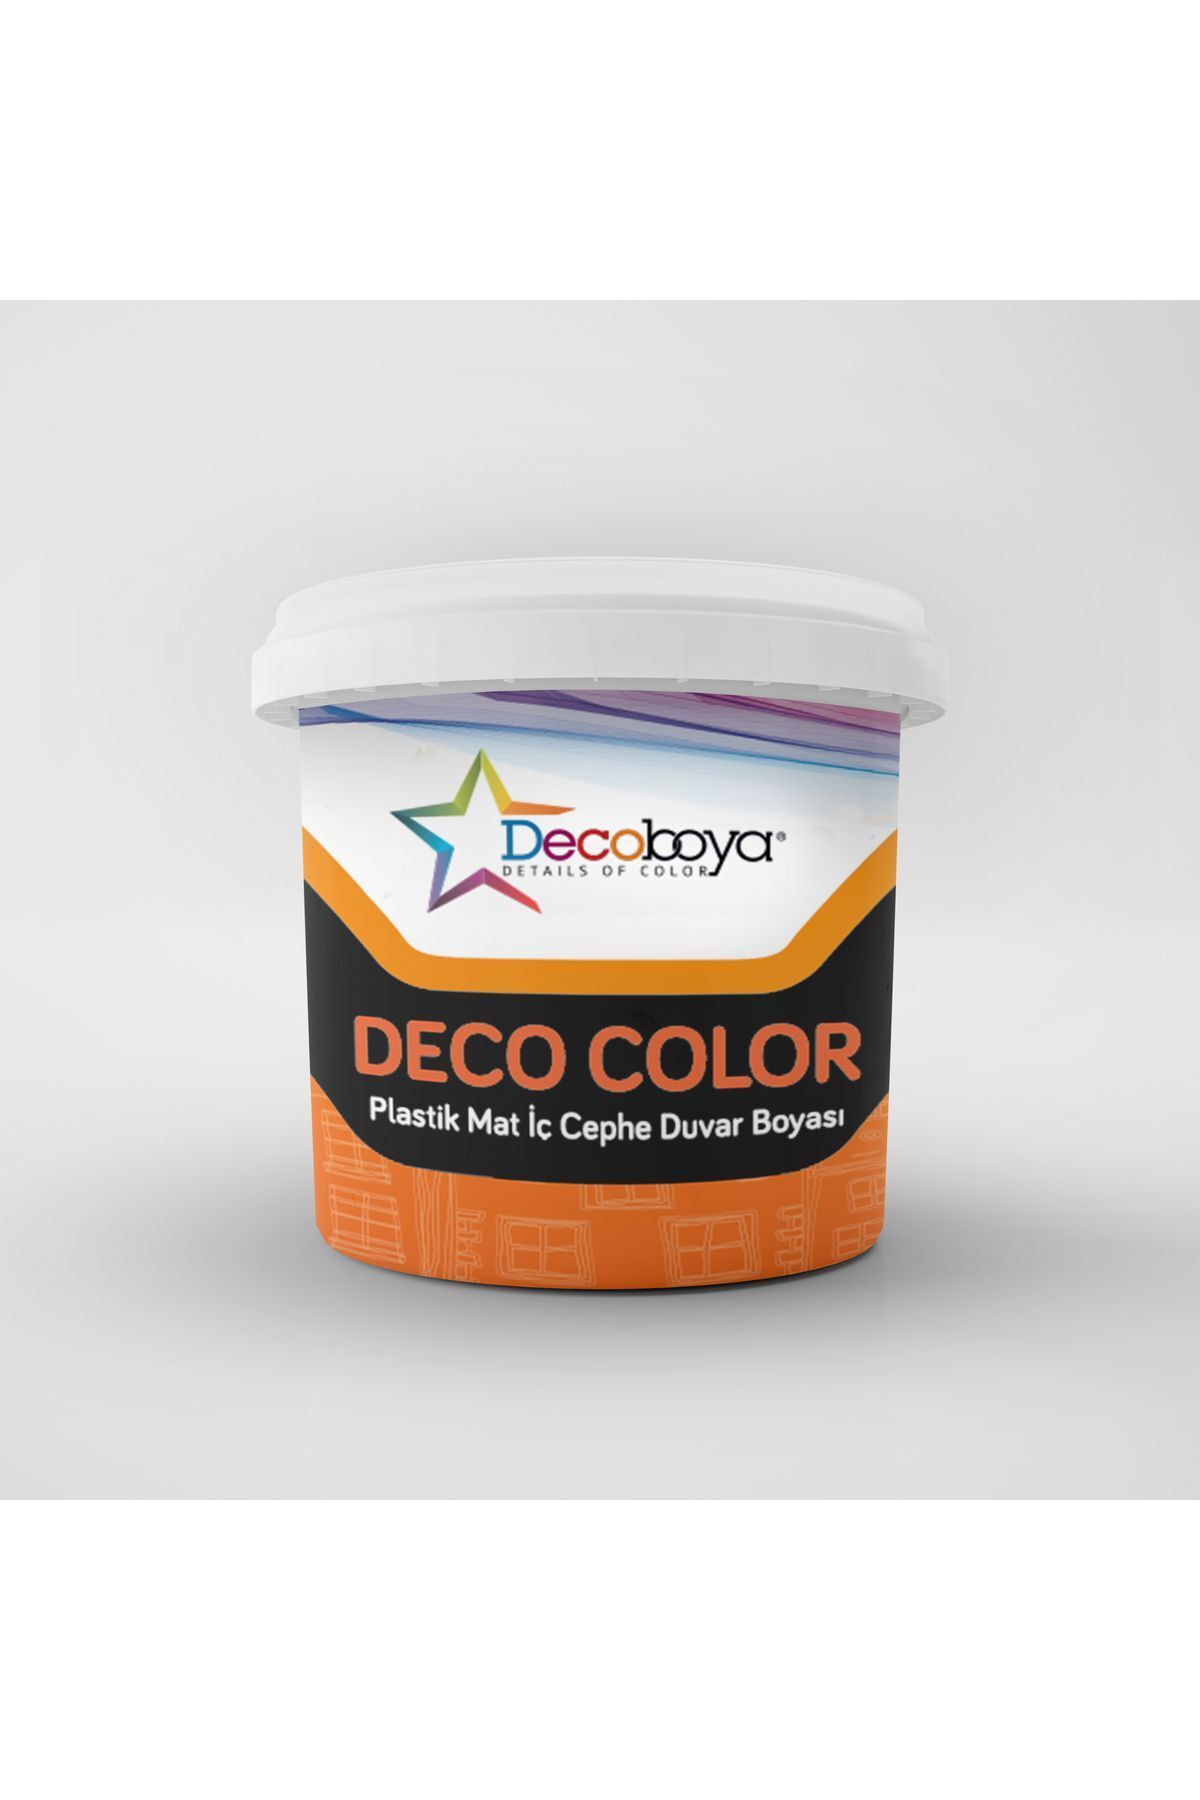 DecoBoya Deco Color Plastik Mat İç Cephe Duvar Boyası 10 Kg Tüm Renkler